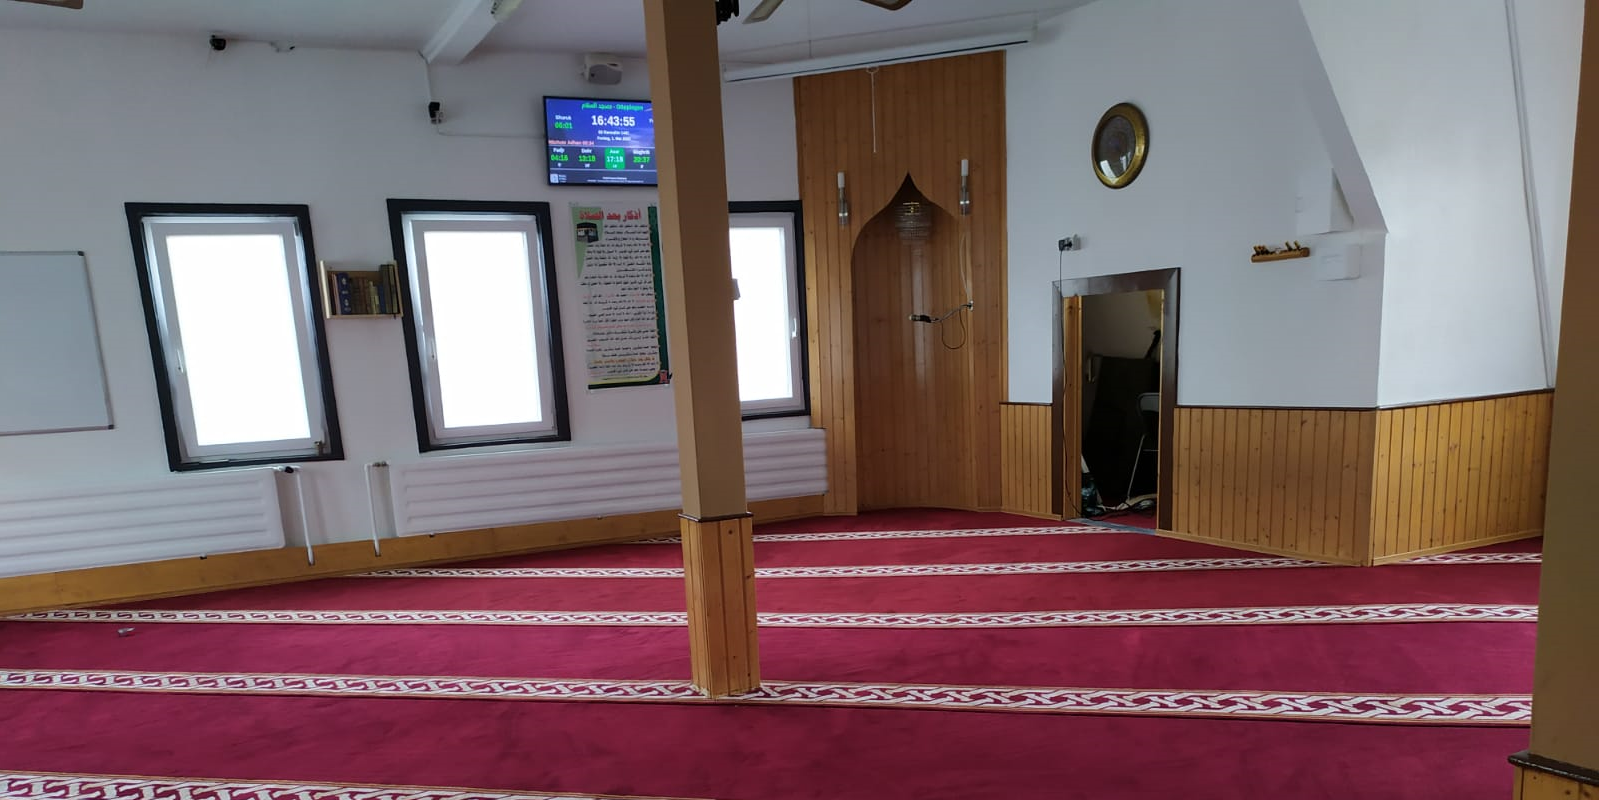 Willkommen auf der Website von Masjid ِAs-Salam in Göppingen